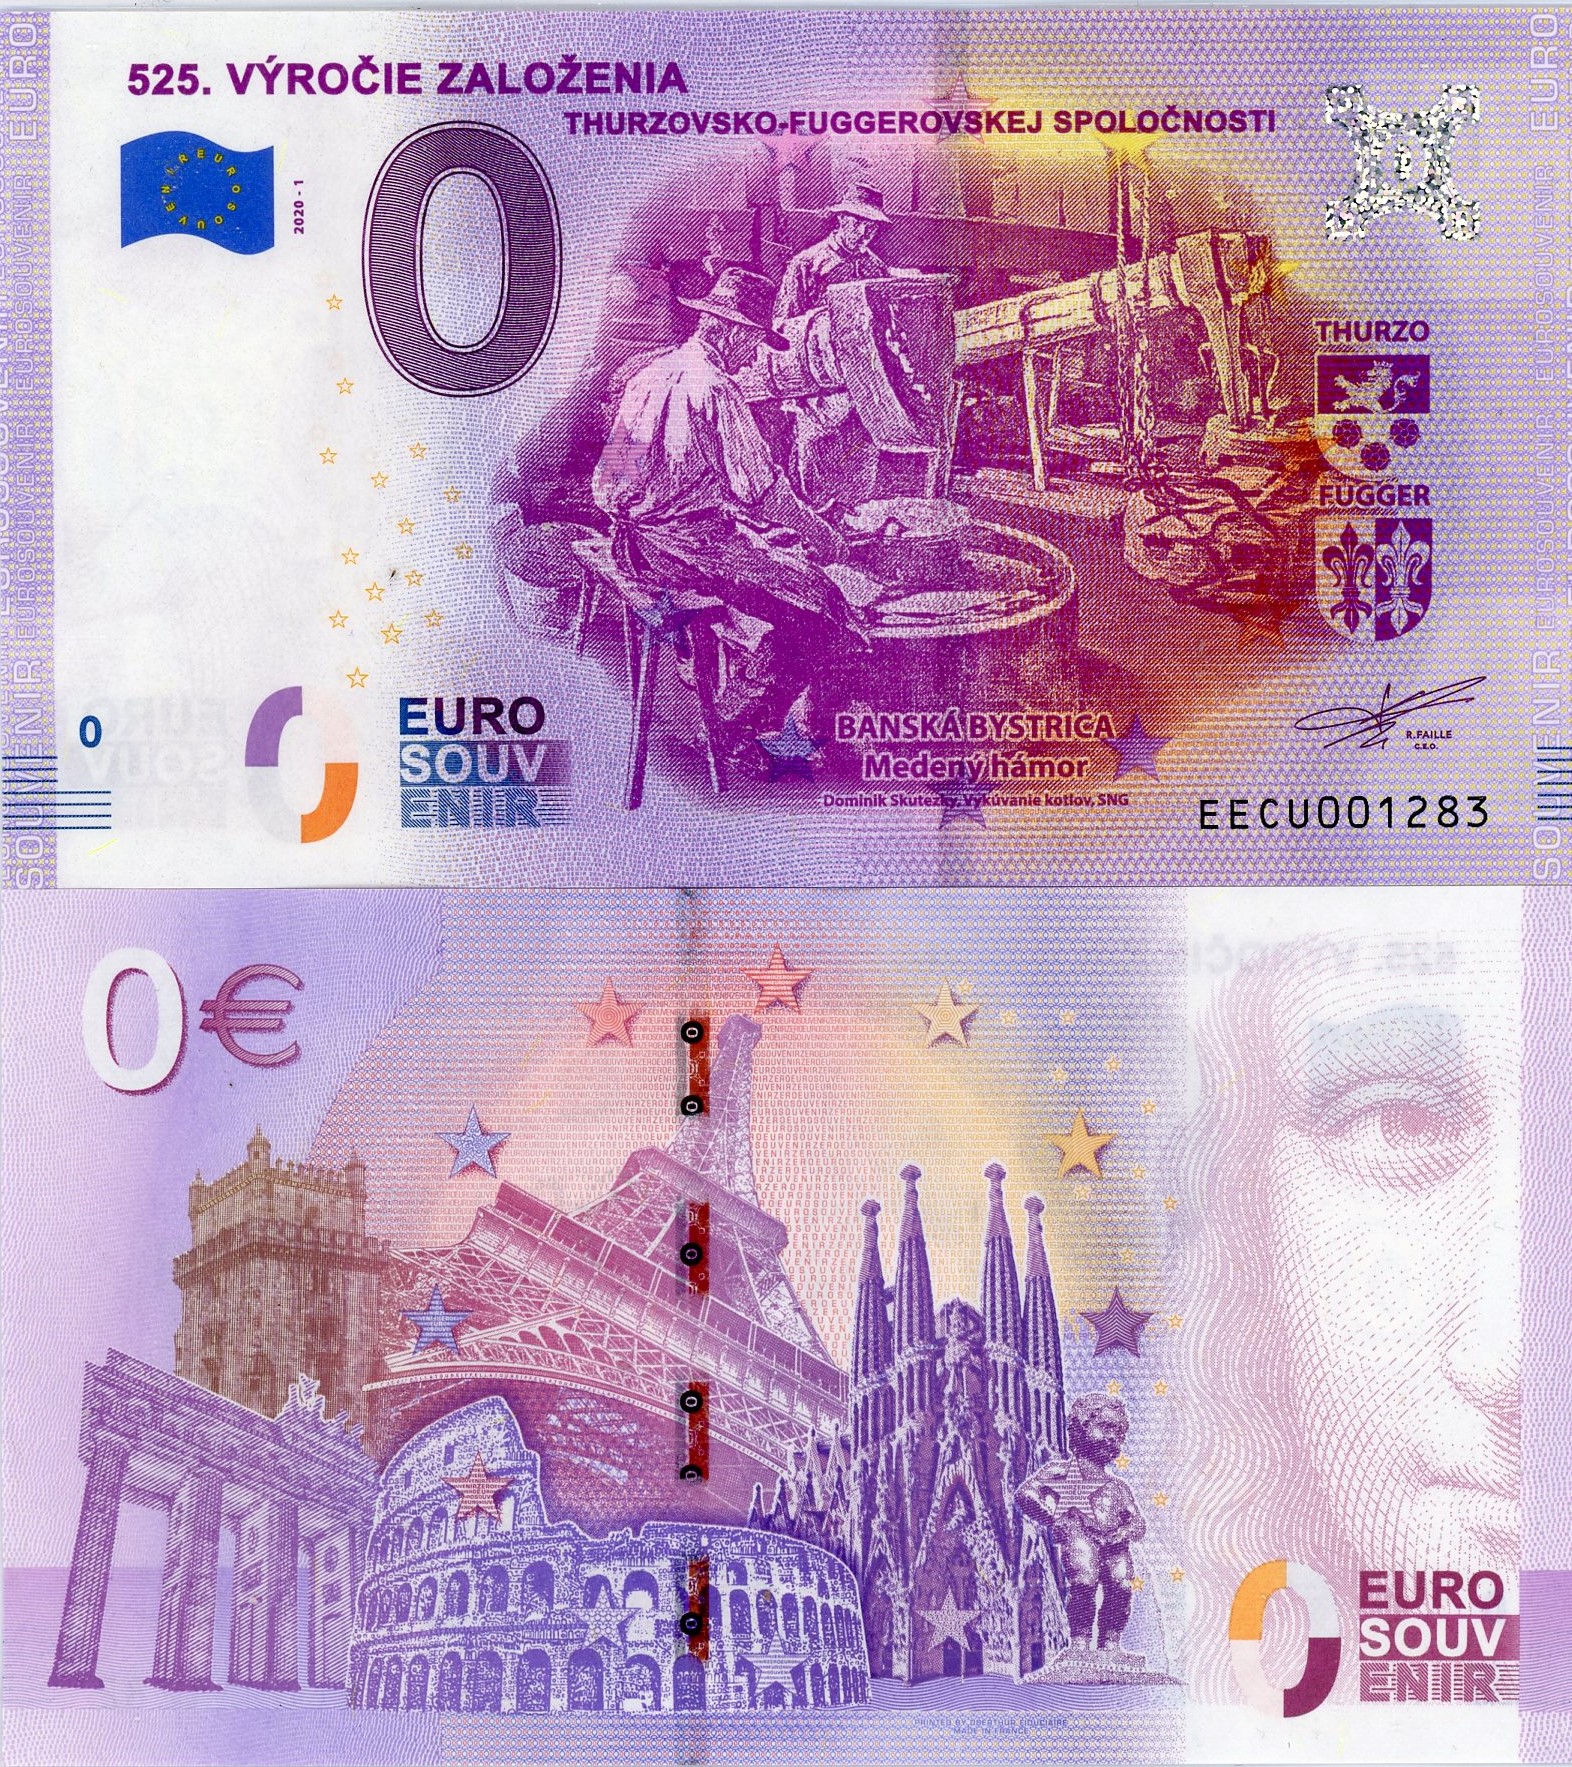 0 euro suvenír 2020/1 Slovensko UNC Thurzovsko-Fuggerovská spoločnost